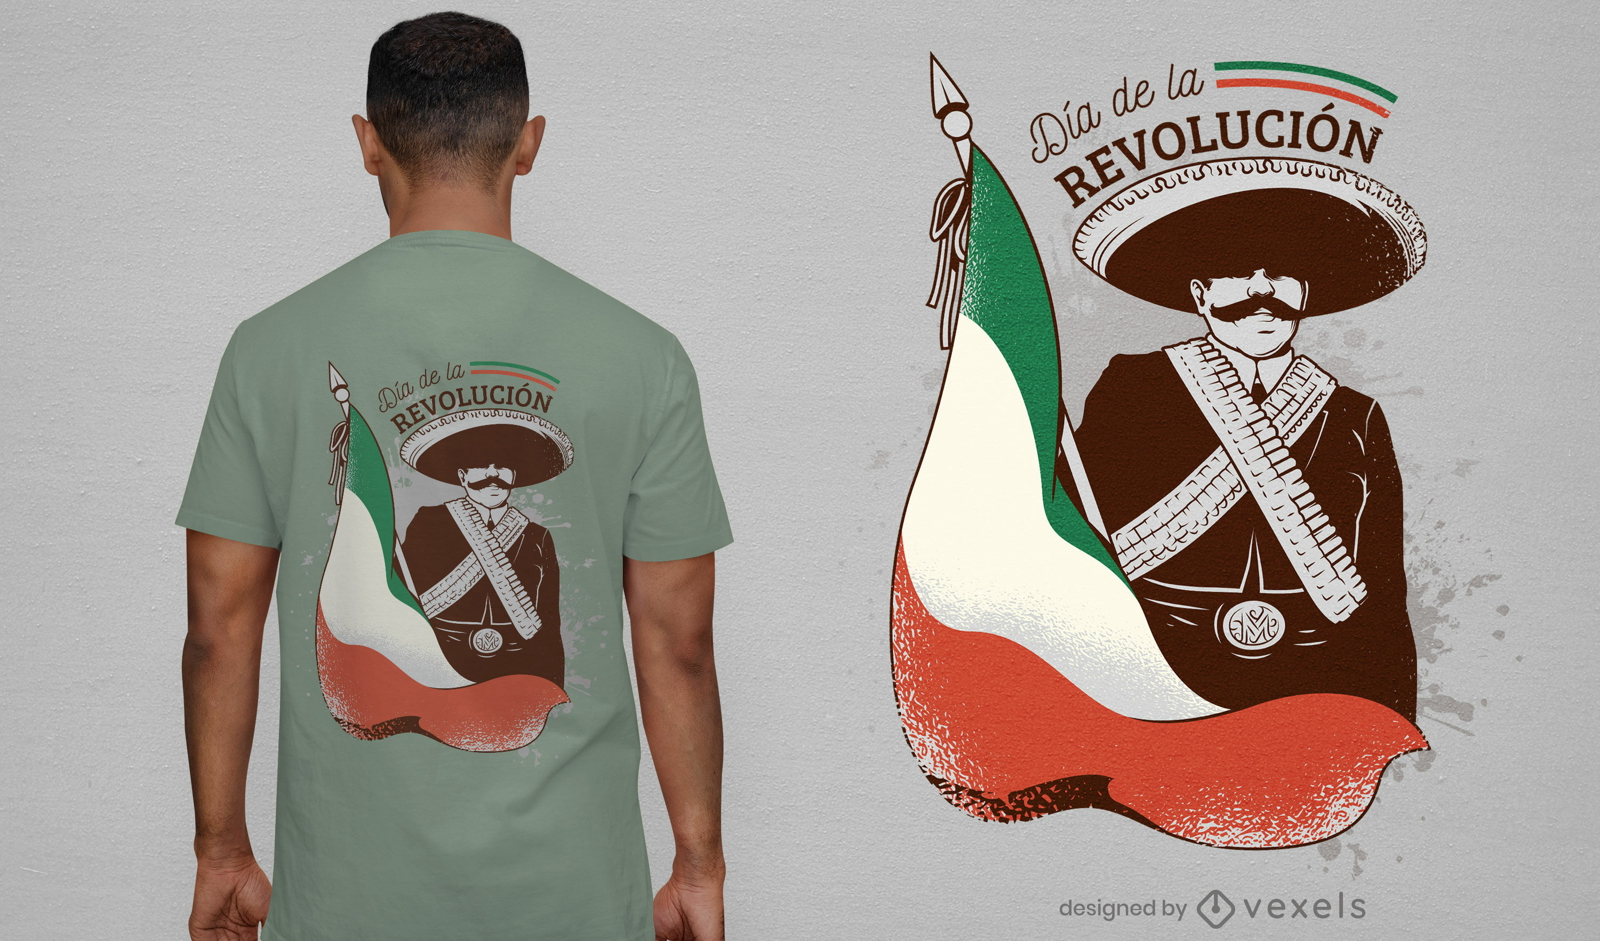 Diseño de camiseta del día de la revolución mexicana.